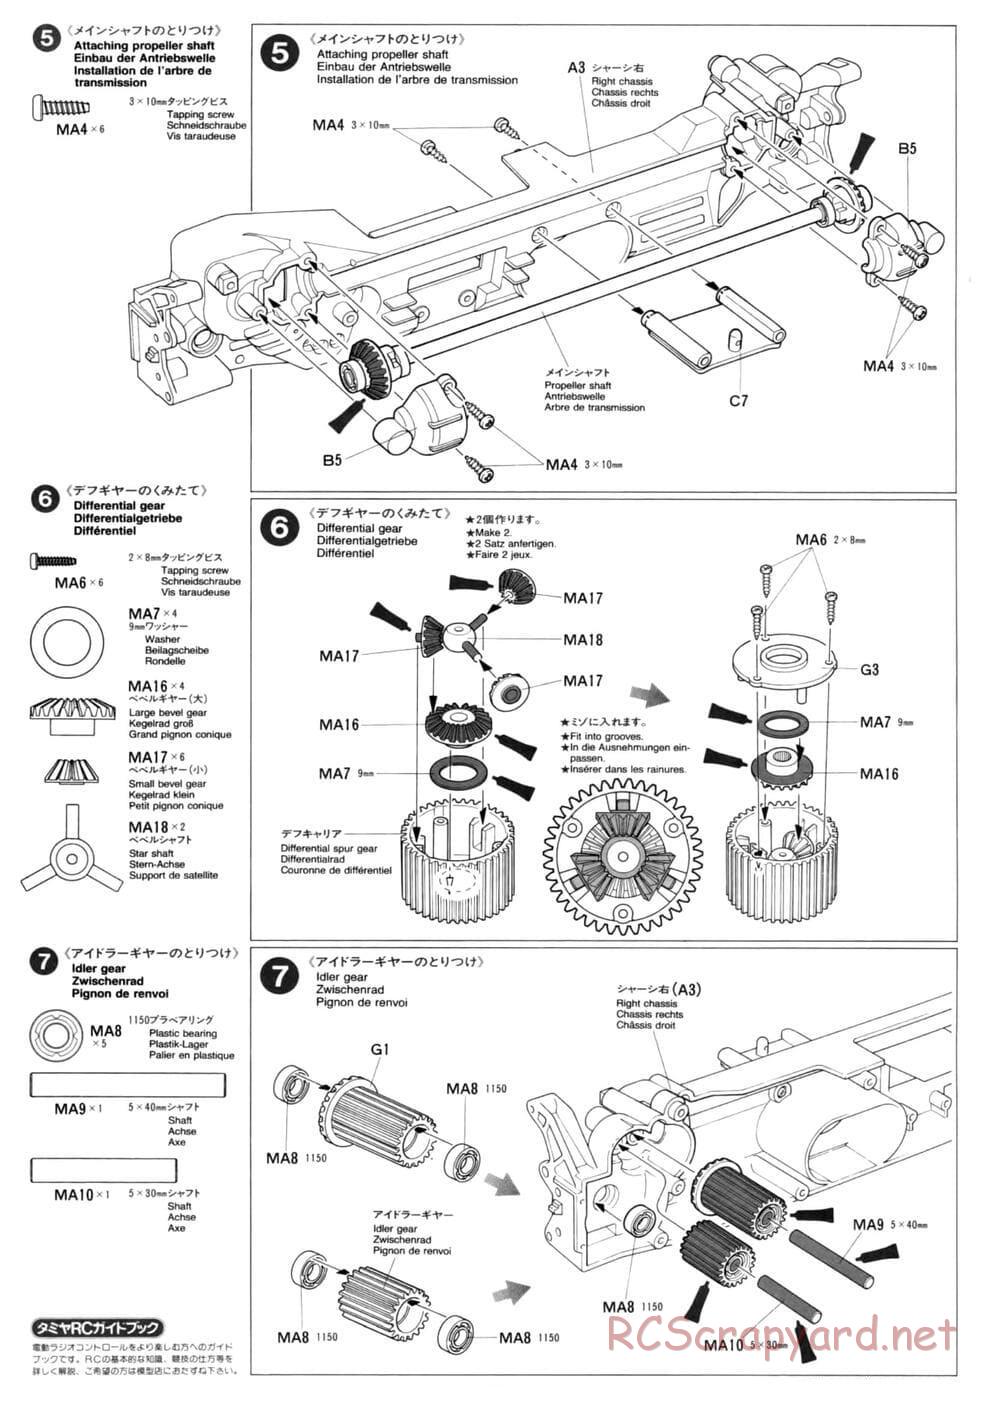 Tamiya - TL-01 Chassis - Manual - Page 6